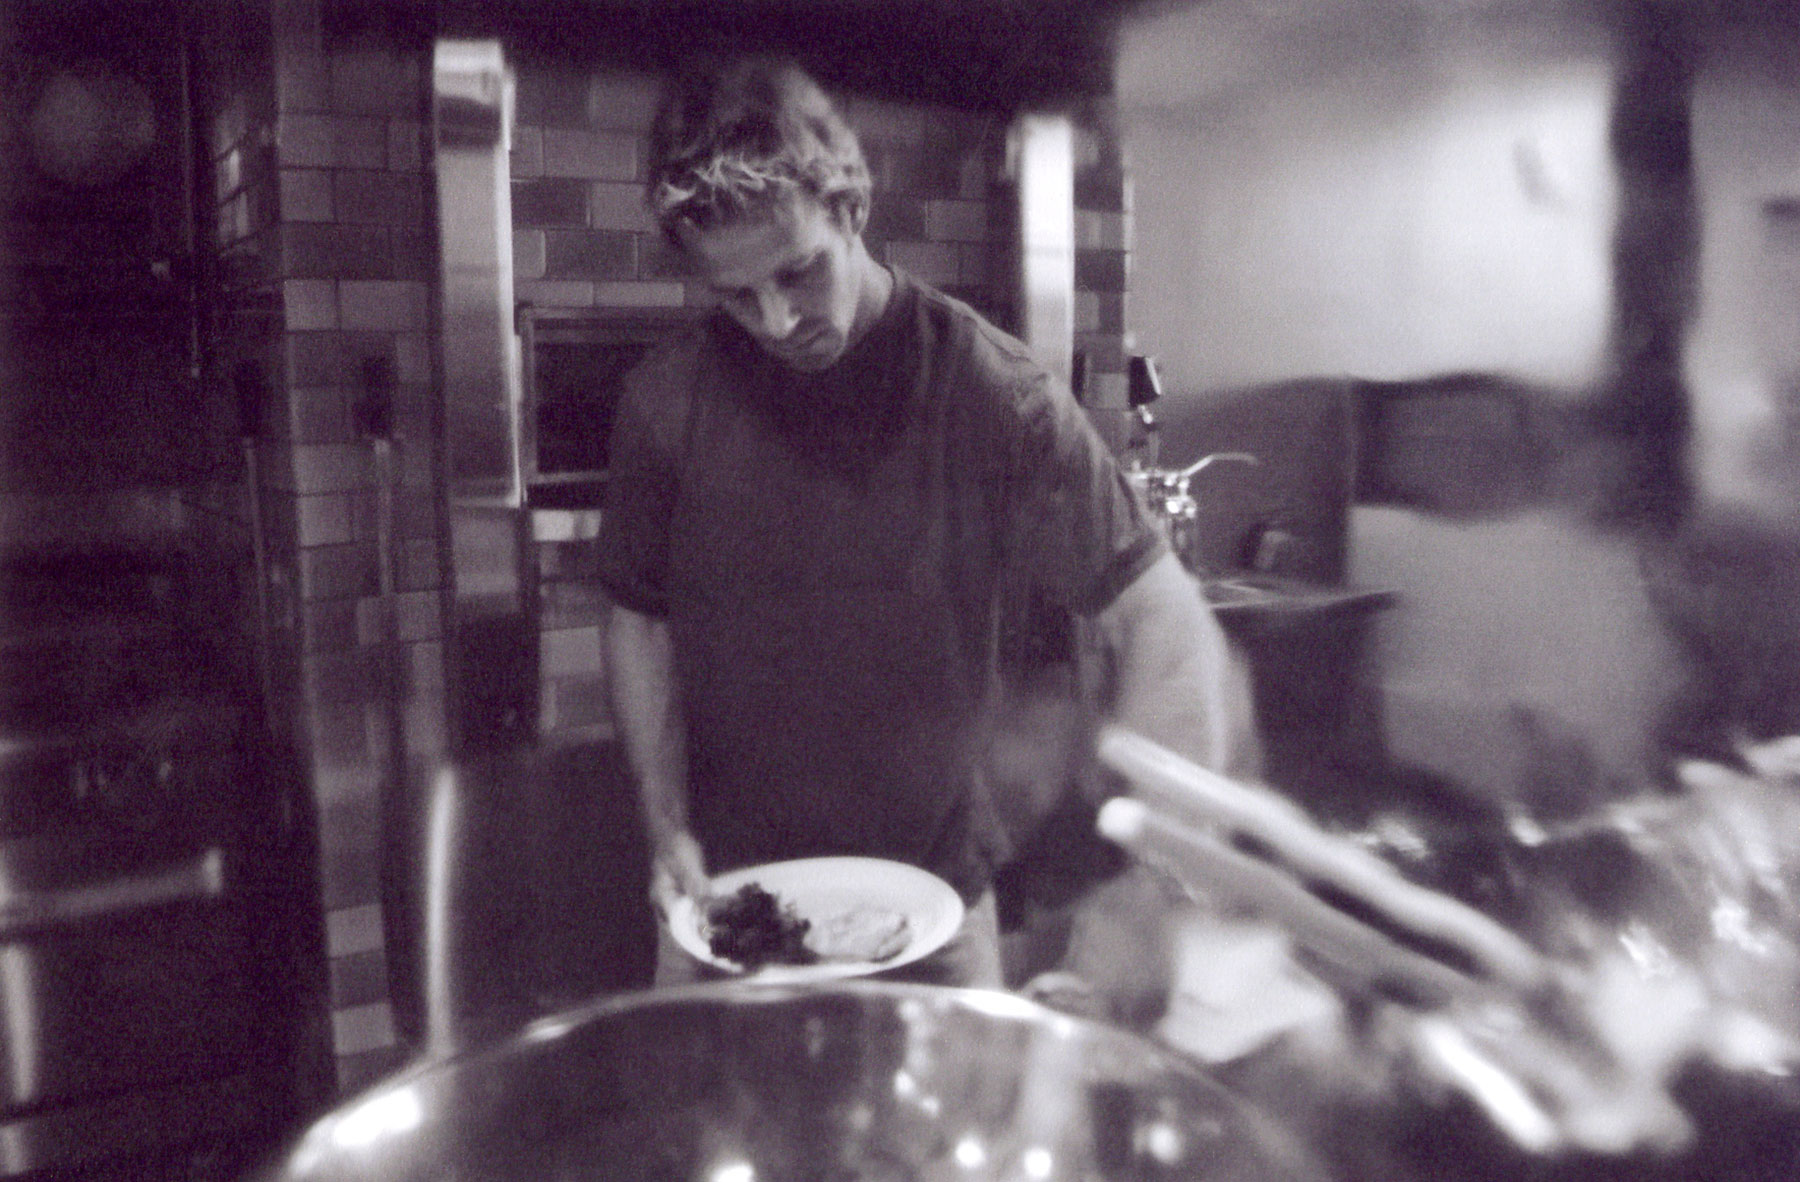 Urbane Cafe owner Tom Holt preparing food